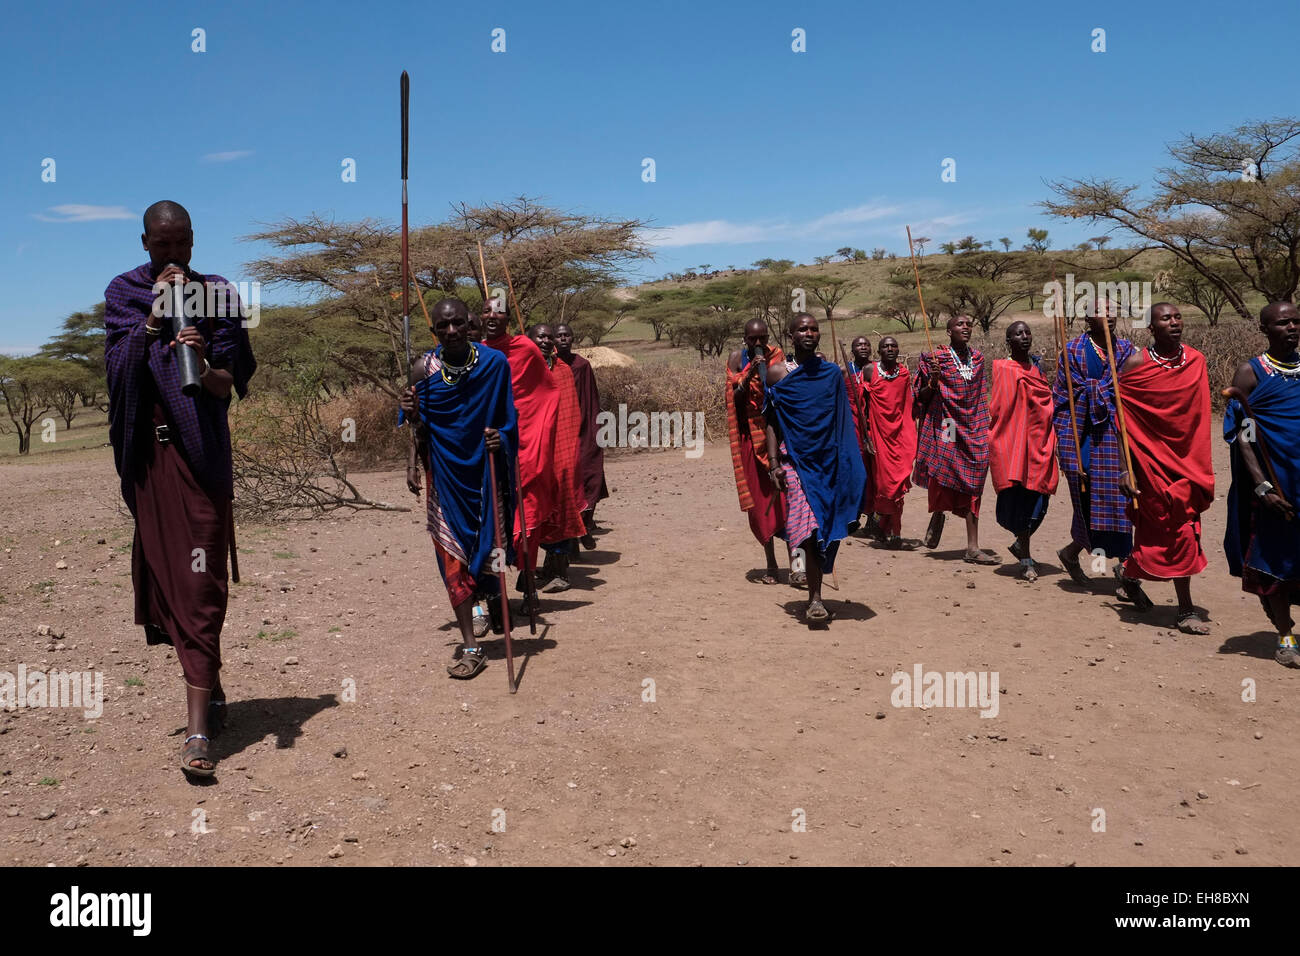 Eine Gruppe von Massai Krieger führen Sie eine Art von März - Vergangenheit während des traditionellen Eunoto ceremony in einem kommenden alt Zeremonie für junge Krieger in der Masai Stamm in der Ngorongoro Conservation Area im Krater im Hochland von Tansania Ostafrika durchgeführt Stockfoto